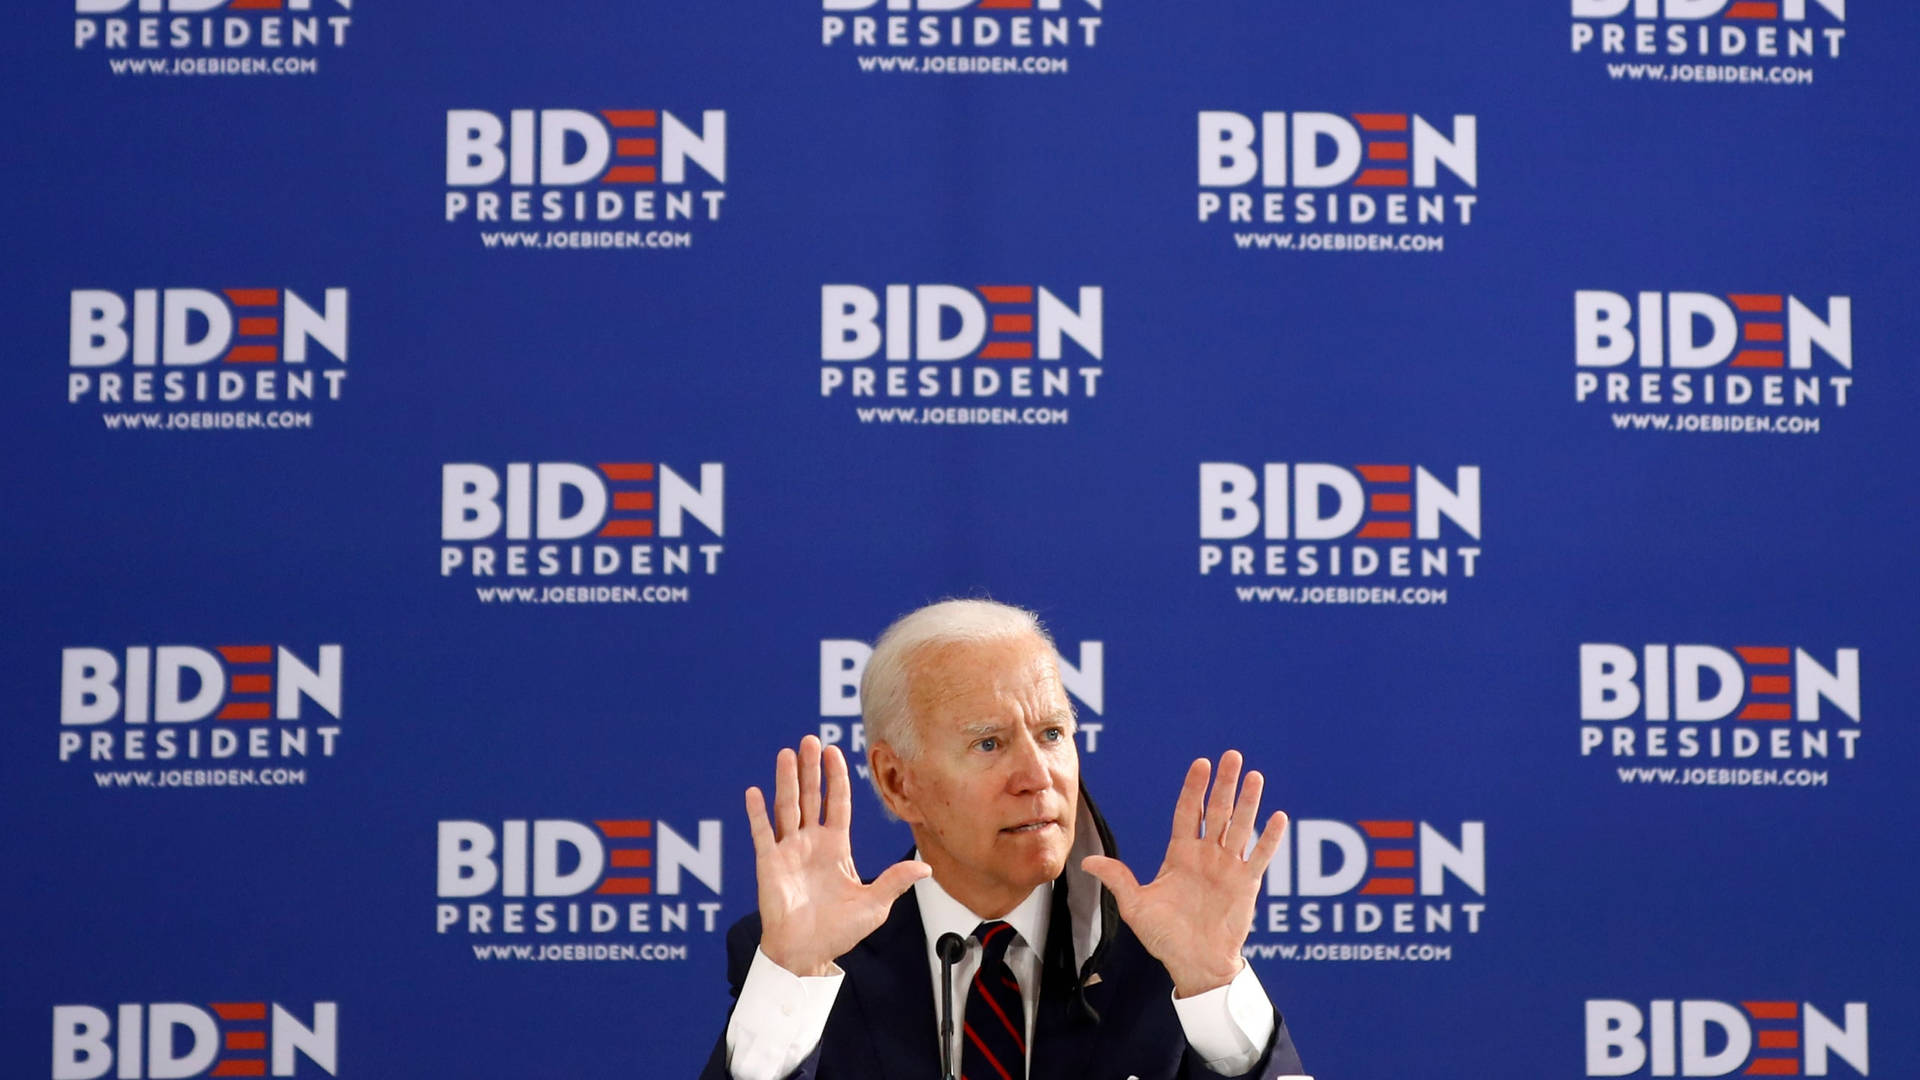 Vice President Joe Biden delivering an inspirational speech Wallpaper